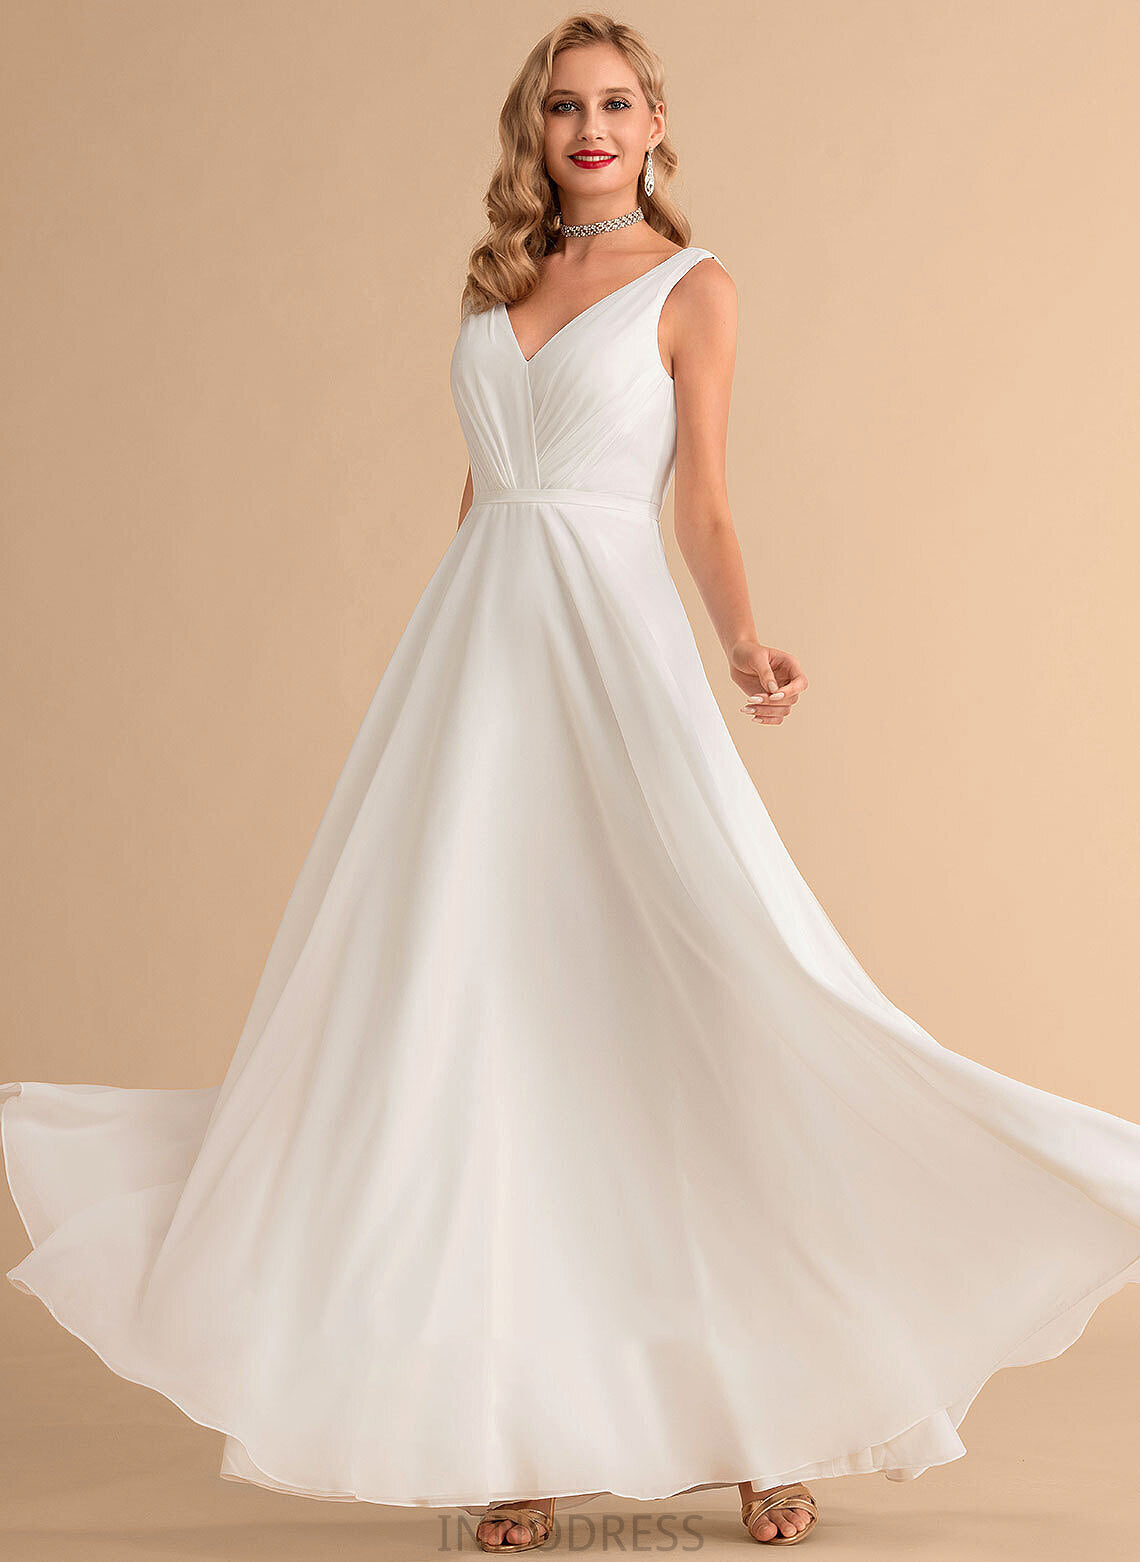 With A-Line Chiffon Ruffle Floor-Length Wedding V-neck Wedding Dresses Adalynn Dress